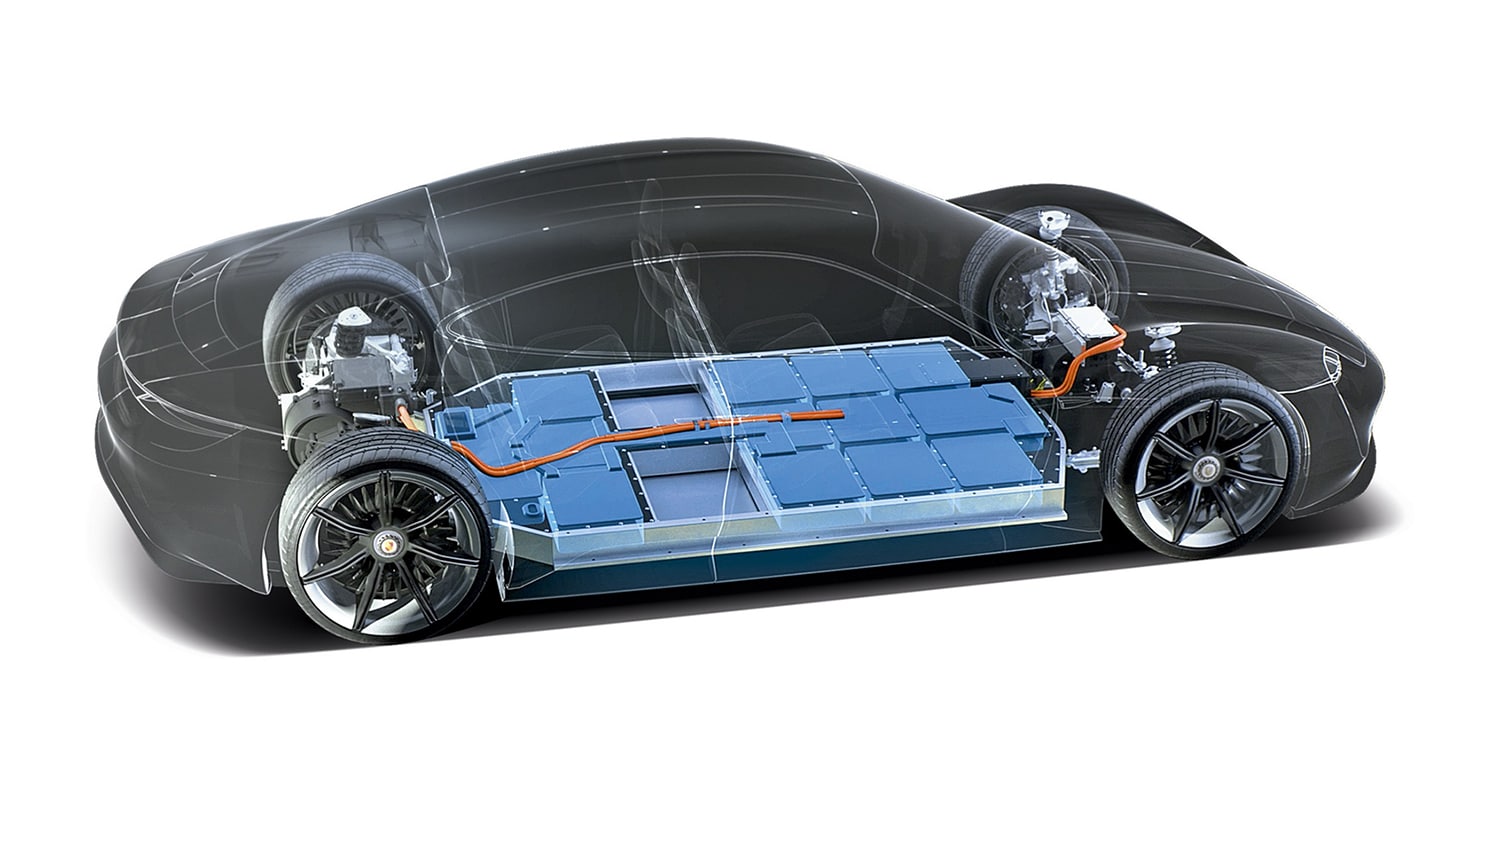 Arrefecimento a líquido das baterias do Porsche Taycan garantem-lhe mais longevidade